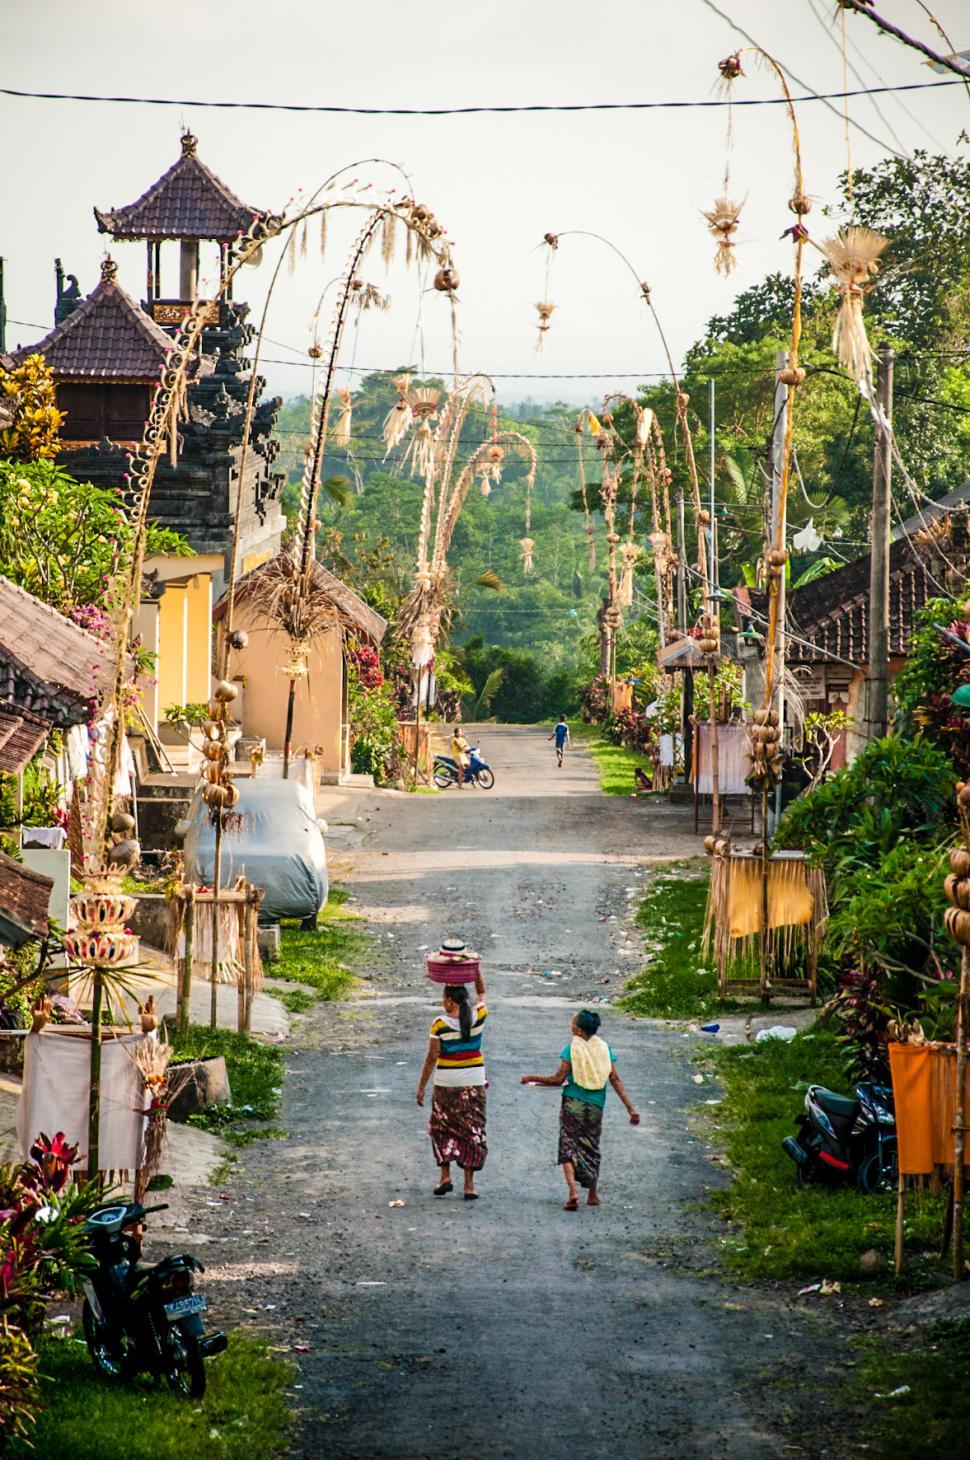 Free Image of Balinese village street 